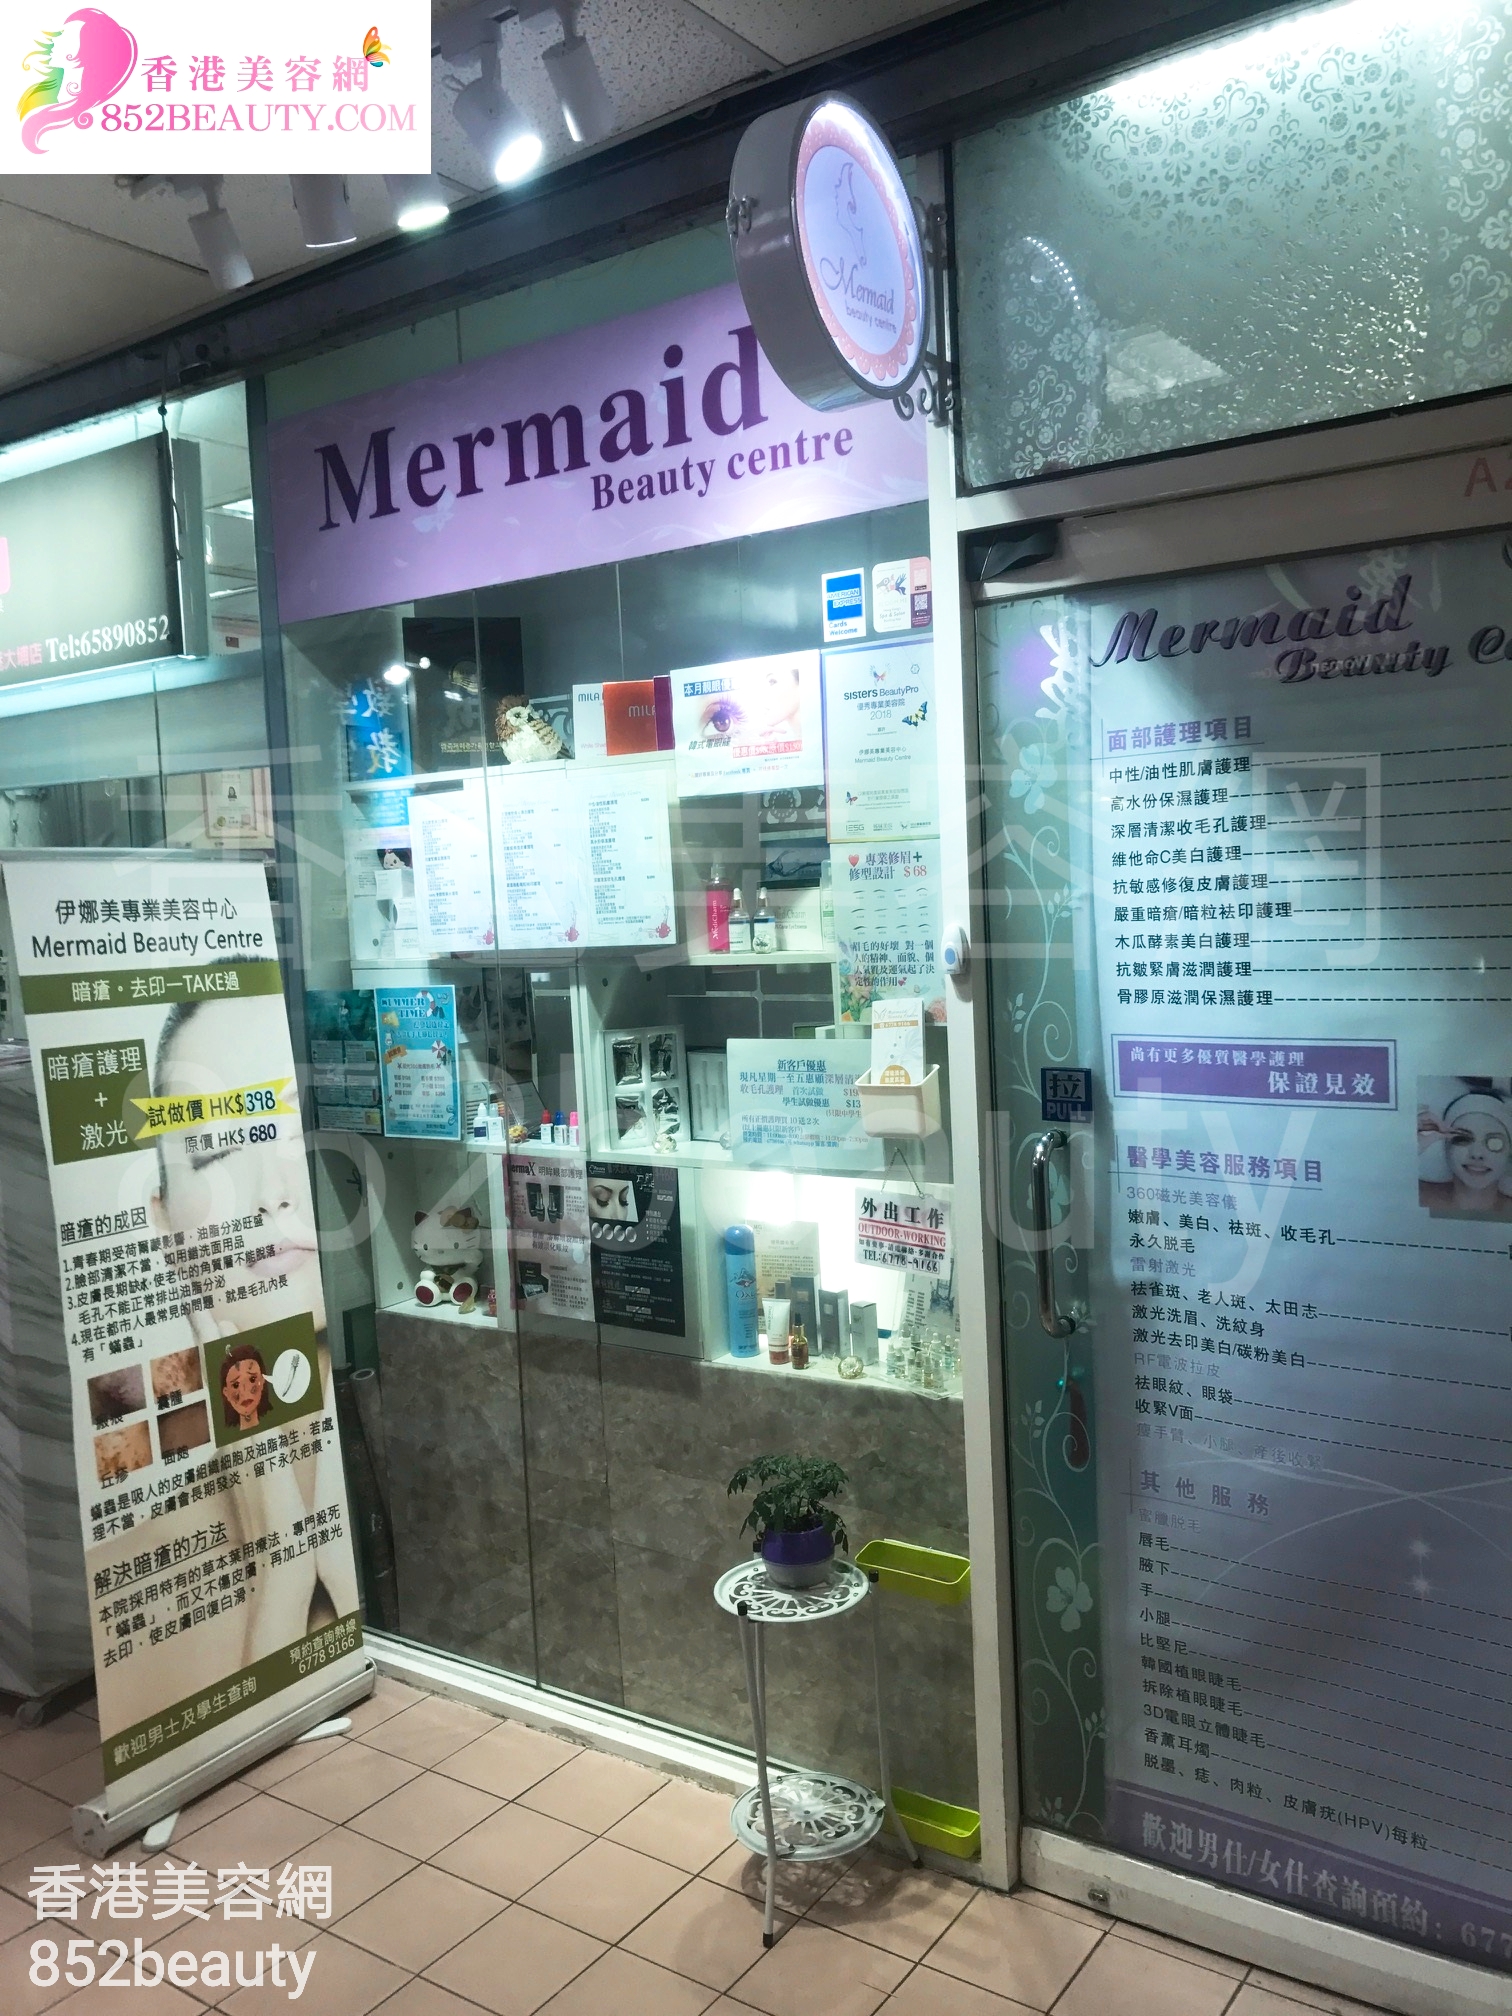 光学美容: 伊娜美專業美容中心 Mermaid Beauty Centre